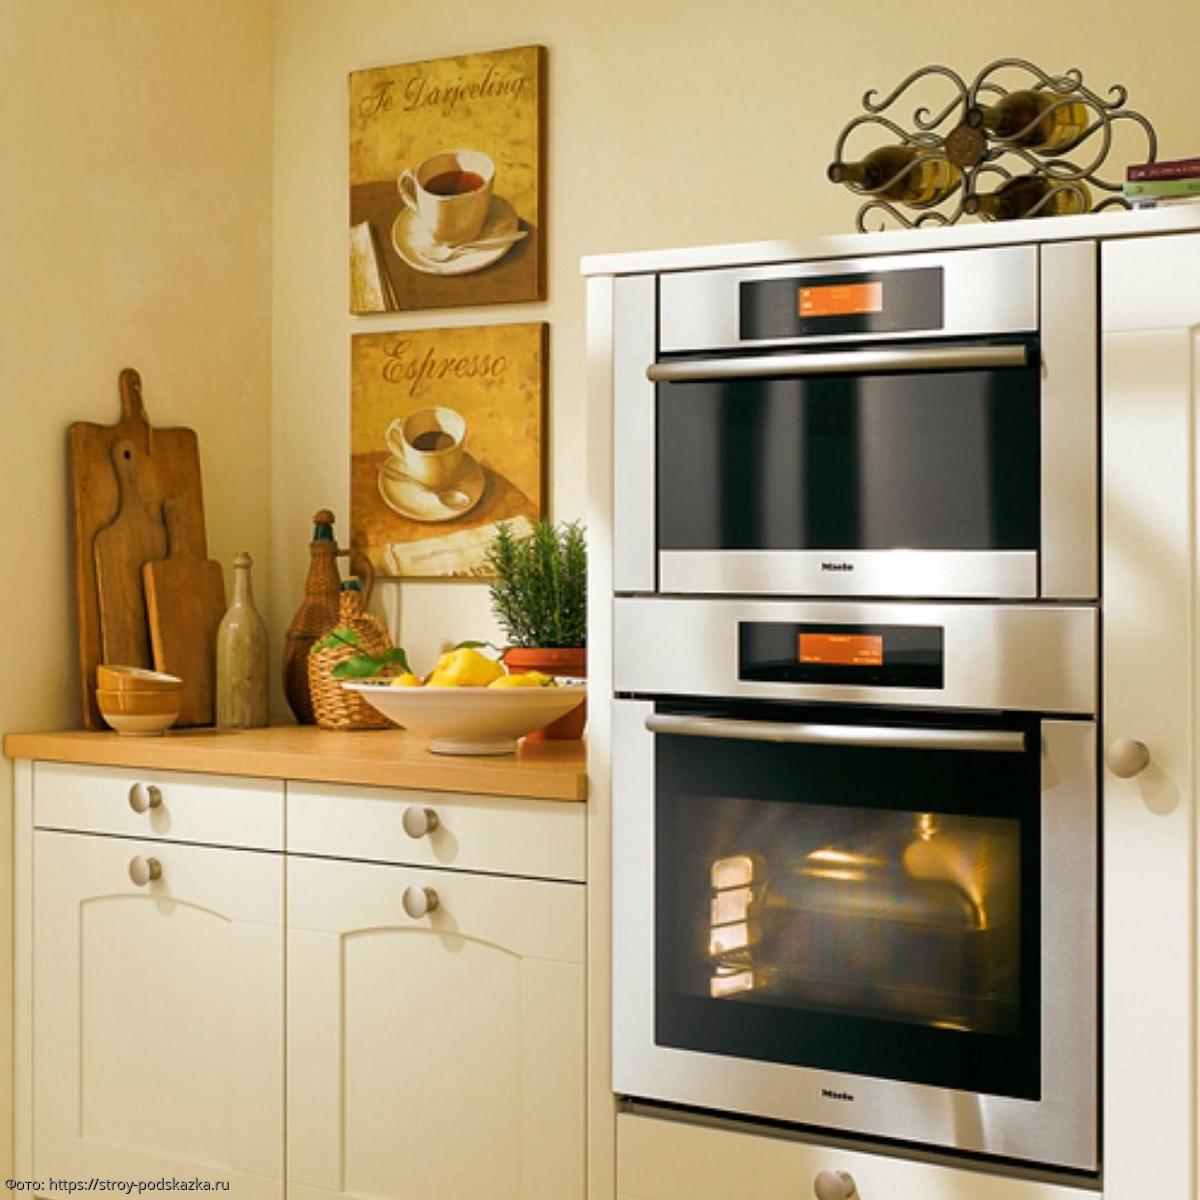 Встроенный духовой шкаф маленький. Встроенная микроволновка на кухне. Встроенная духовка и микроволновка в шкафу. Встраиваемая микроволновая печь и духовой шкаф. Встроенные духовые шкафы в кухню.